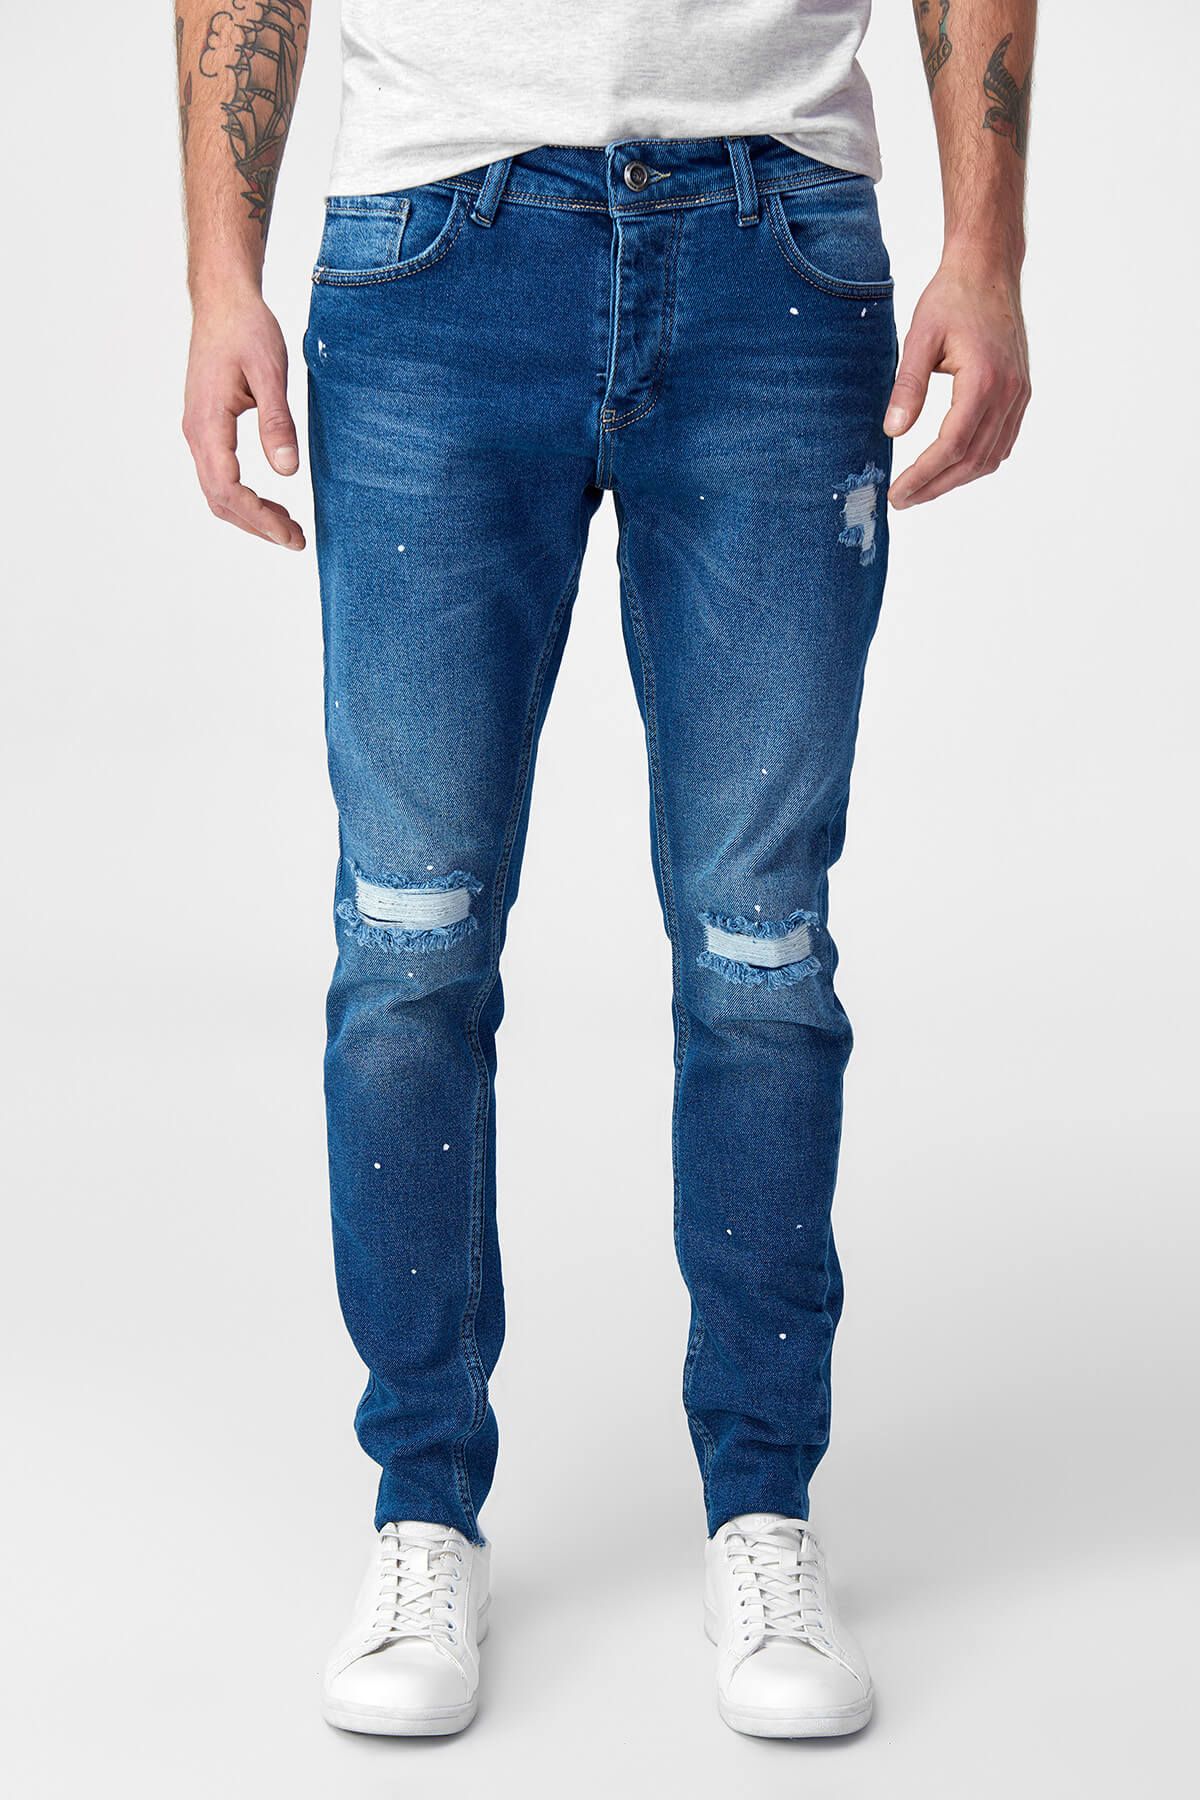 TRENDYOL MAN Denim House Mavi Erkek Jean -  Yıpratmalı Slim Fit Esnek Kumaş Denim Pantolon